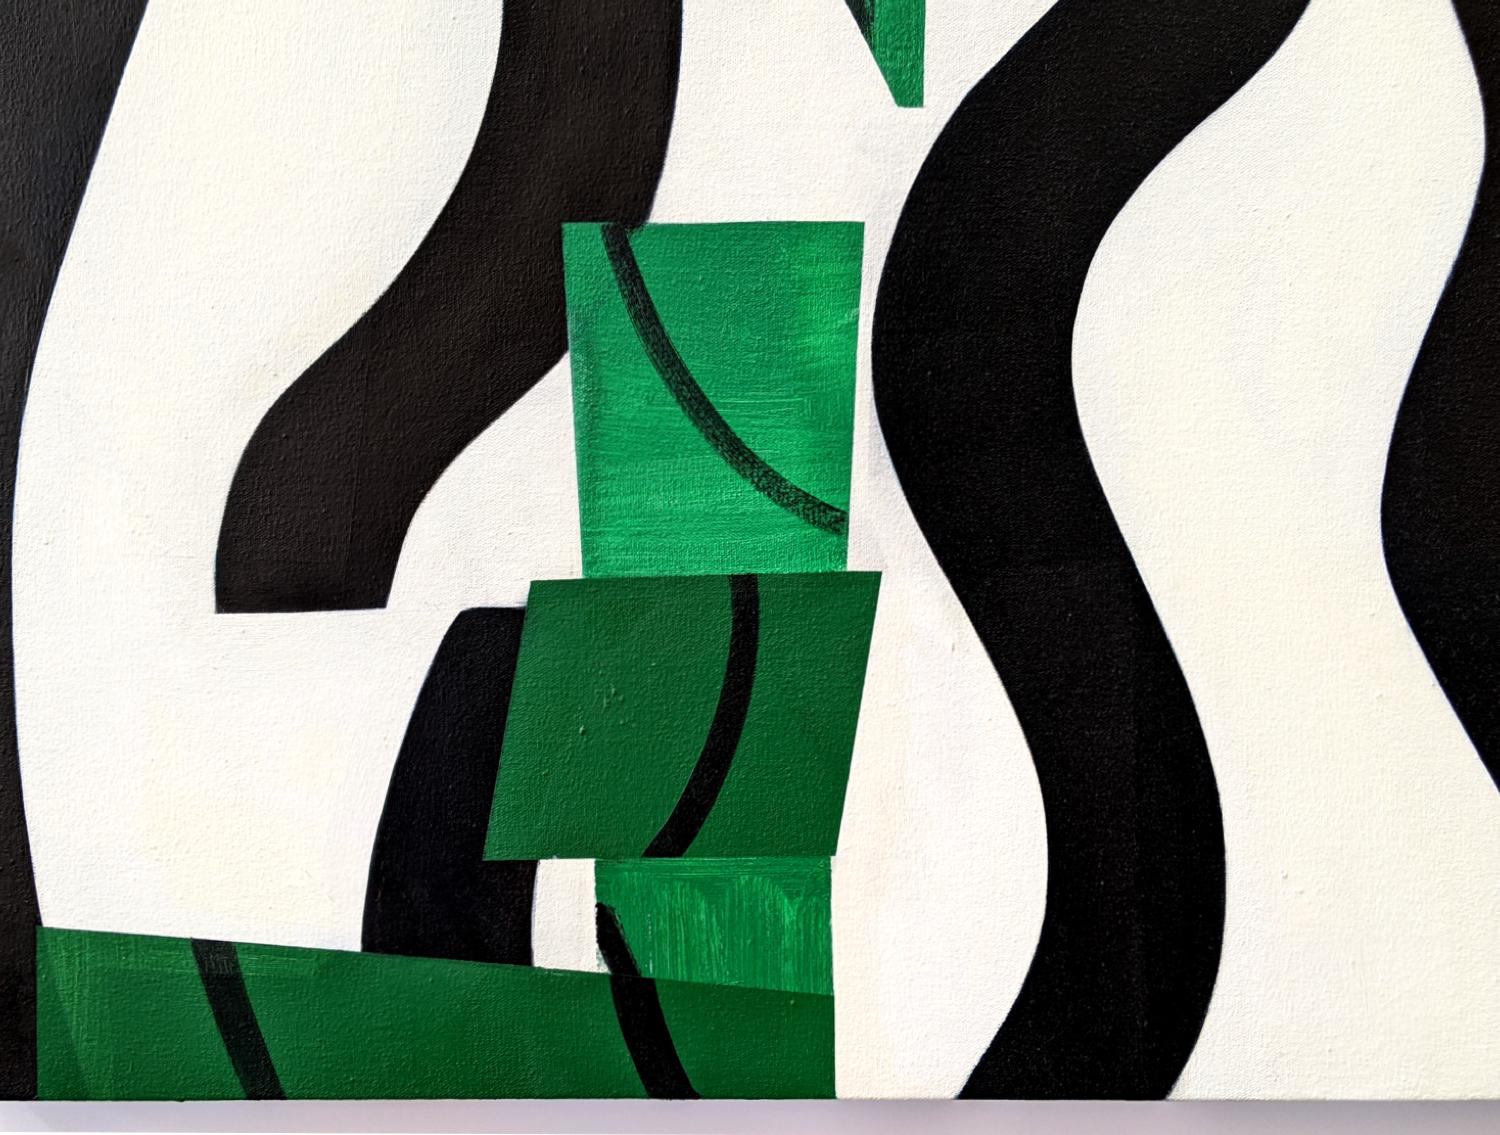 In diesem lyrischen, abstrakten Werk von Mel Davis überschneiden sich organische Formen und fließende Linien in einer verspielten horizontalen Komposition. Mit Form und Farbe - leuchtendes Blau, Rot und Schwarz kontrastieren mit einem frischen